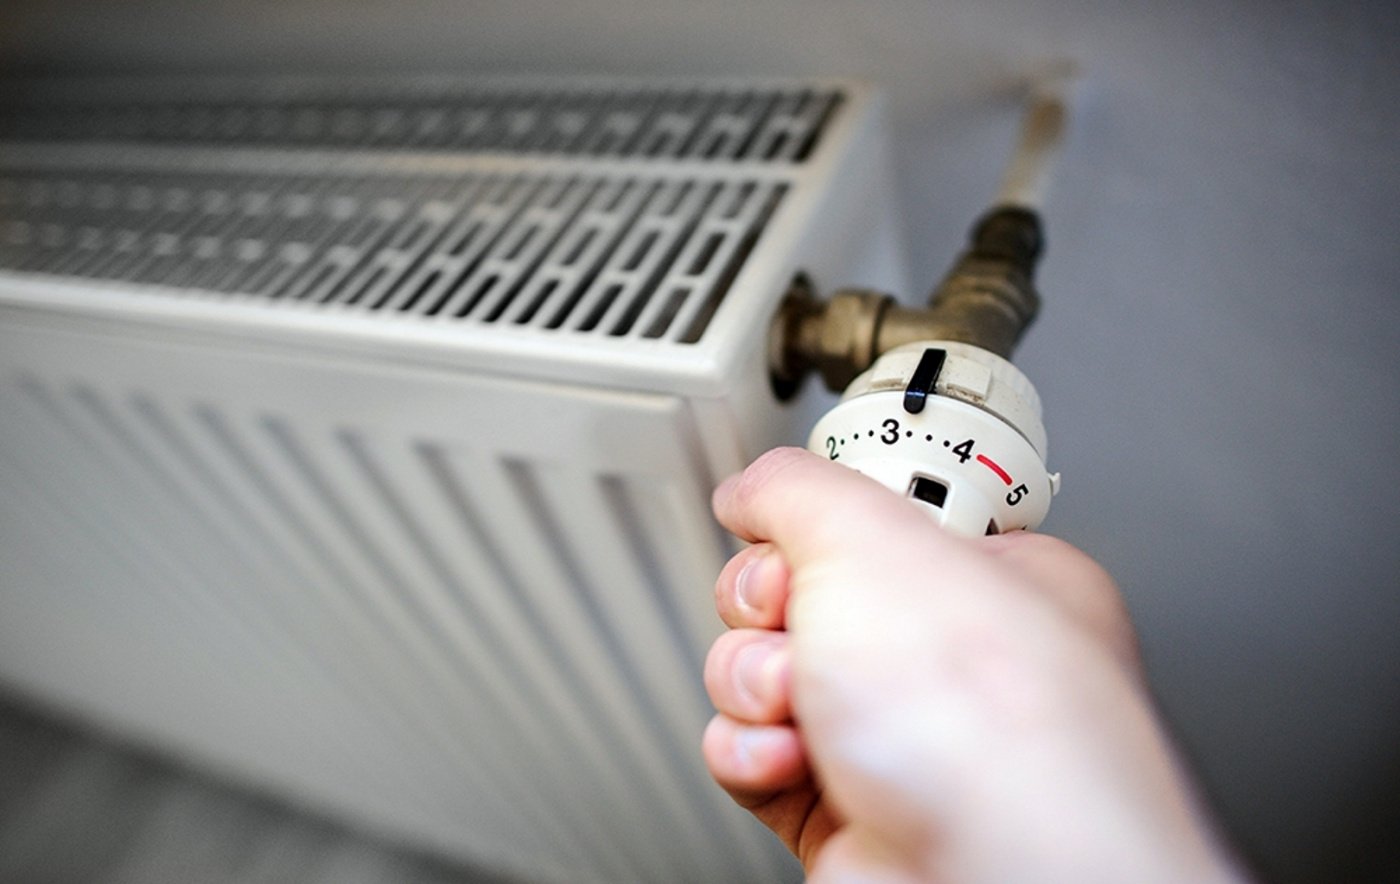 Управляющие организации Рубцовска не успевают своевременно заполнять системы отопления обслуживаемых домов